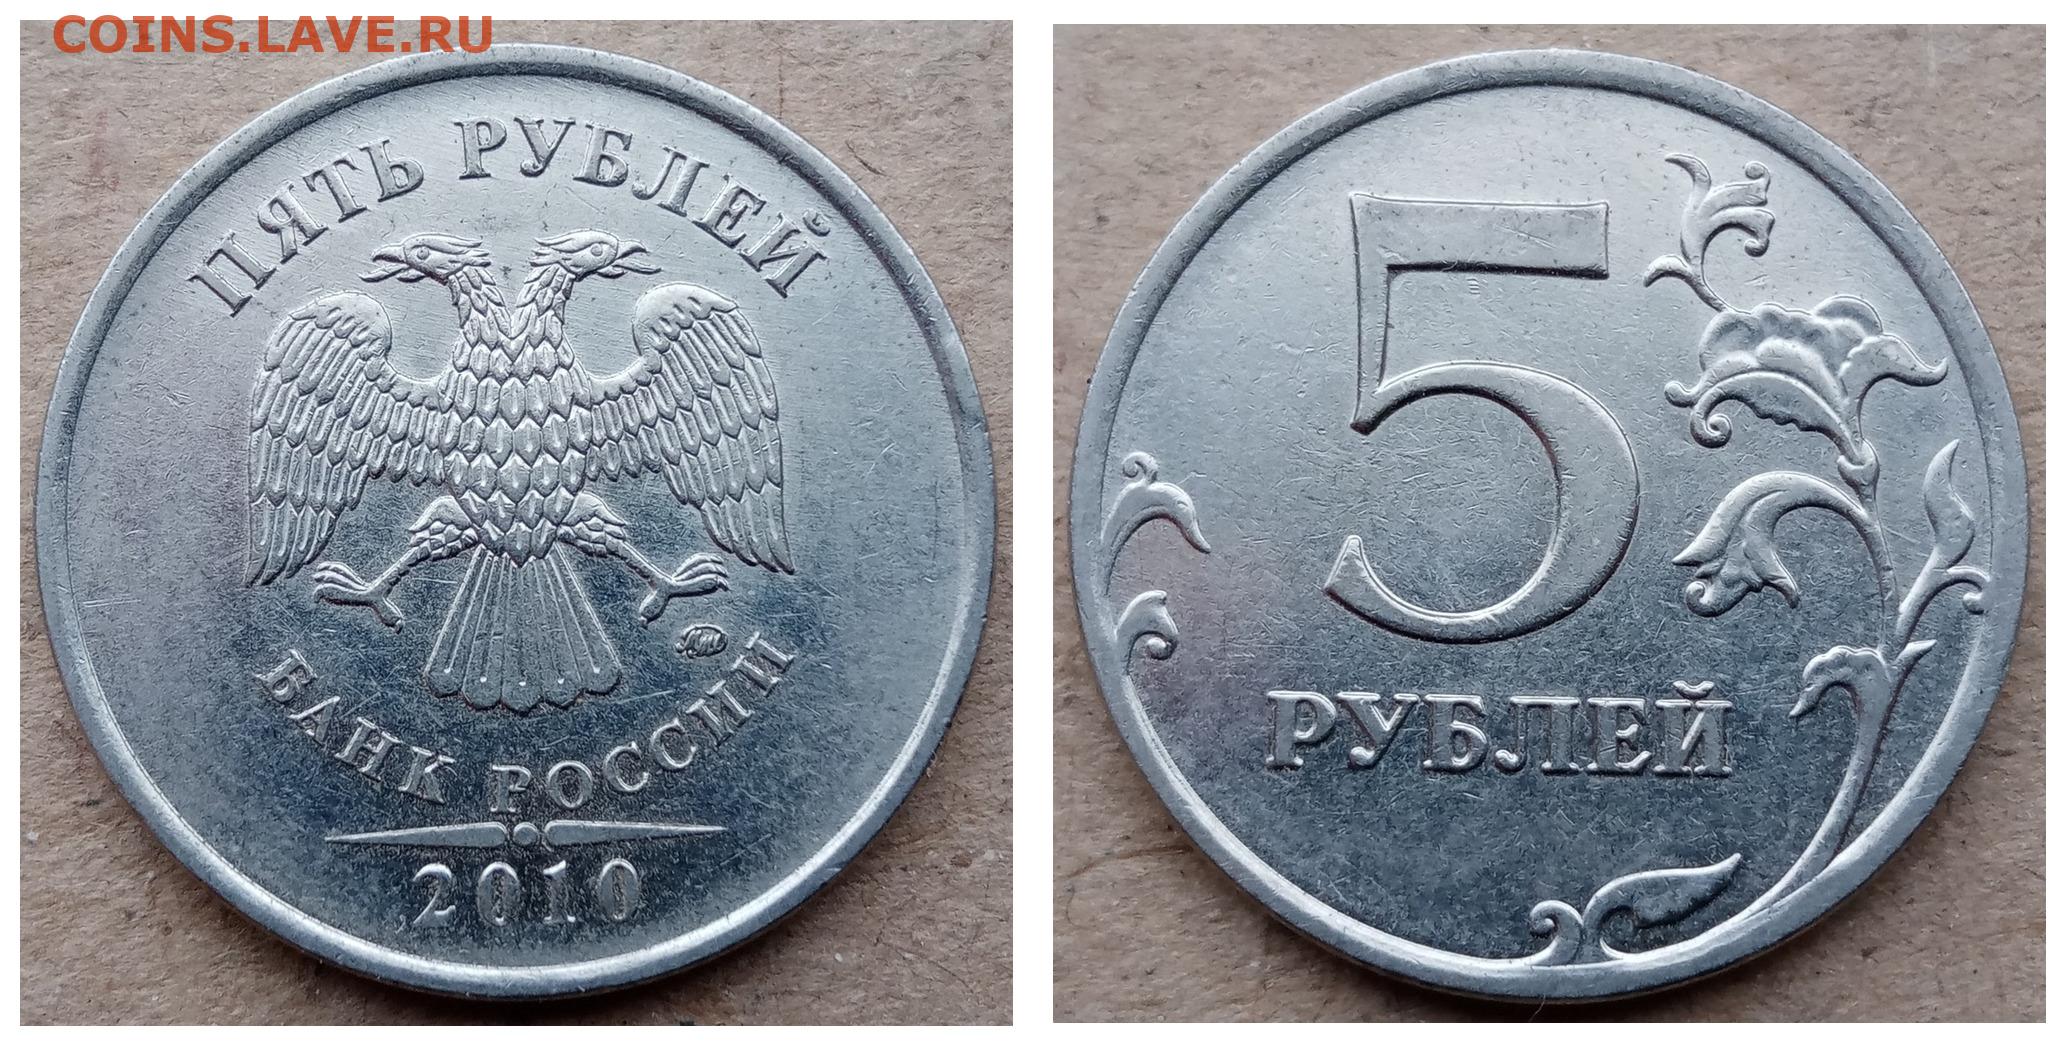 5 рублей россии фото